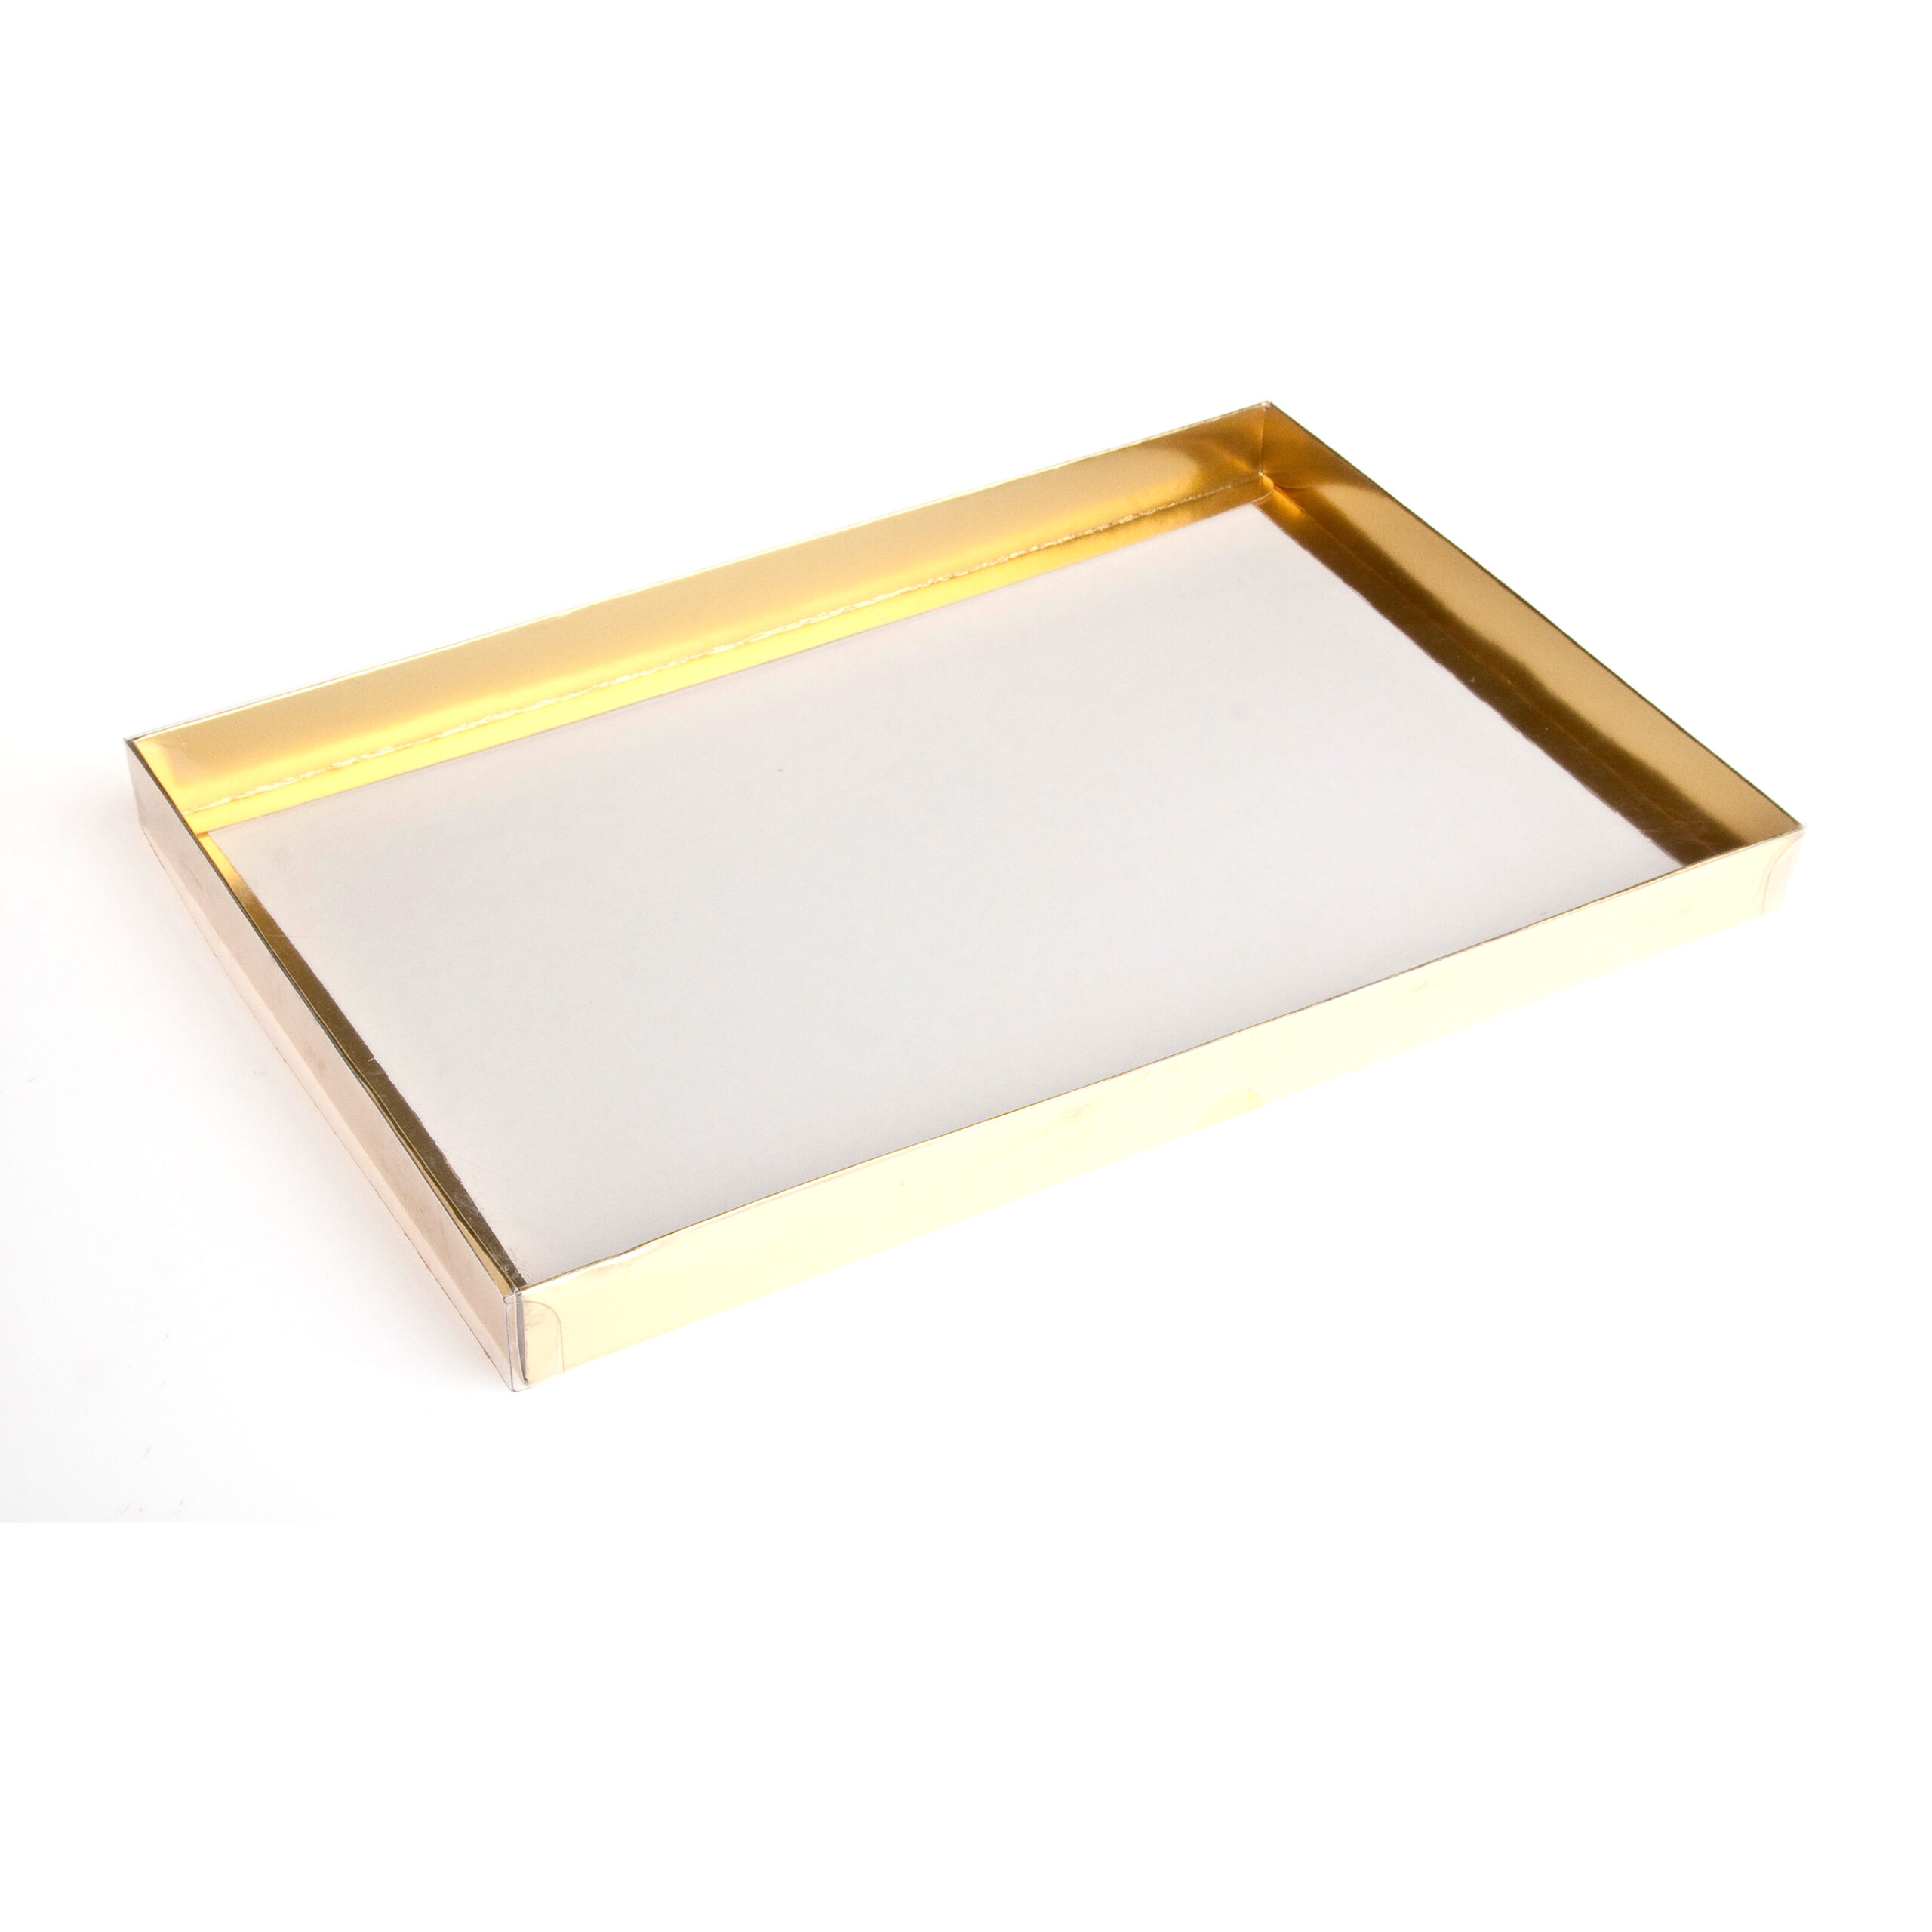 PVC BOX GOLD
BASE 500g CHOC
383x250x30mm